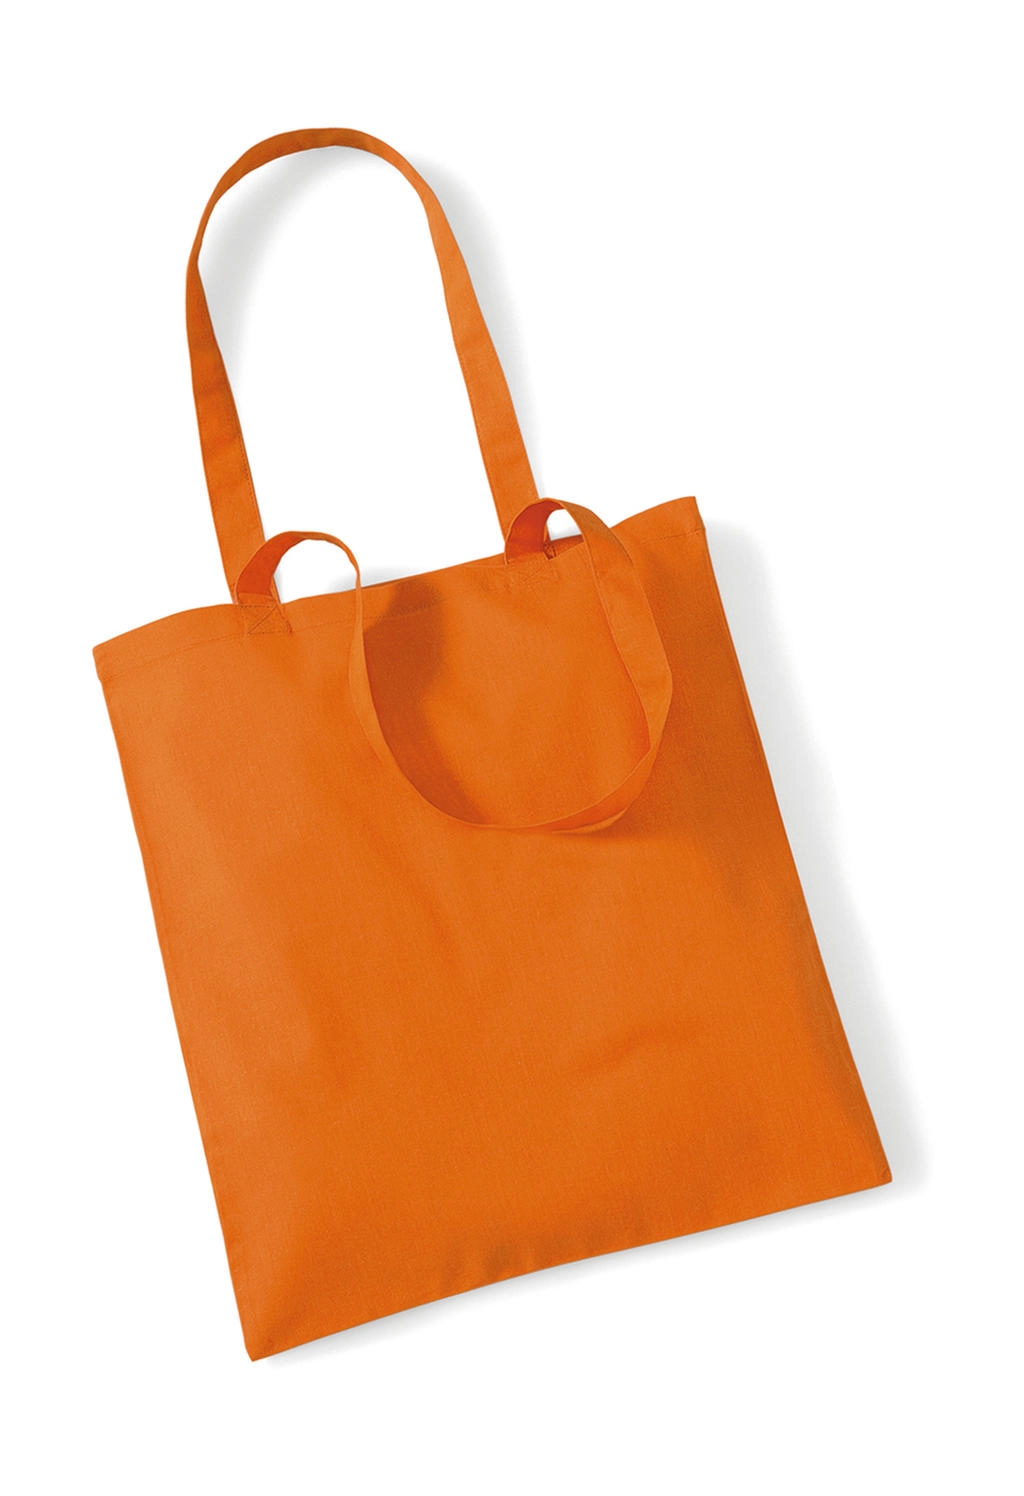 Bag for Life - Long Handles zum Besticken und Bedrucken in der Farbe Orange mit Ihren Logo, Schriftzug oder Motiv.